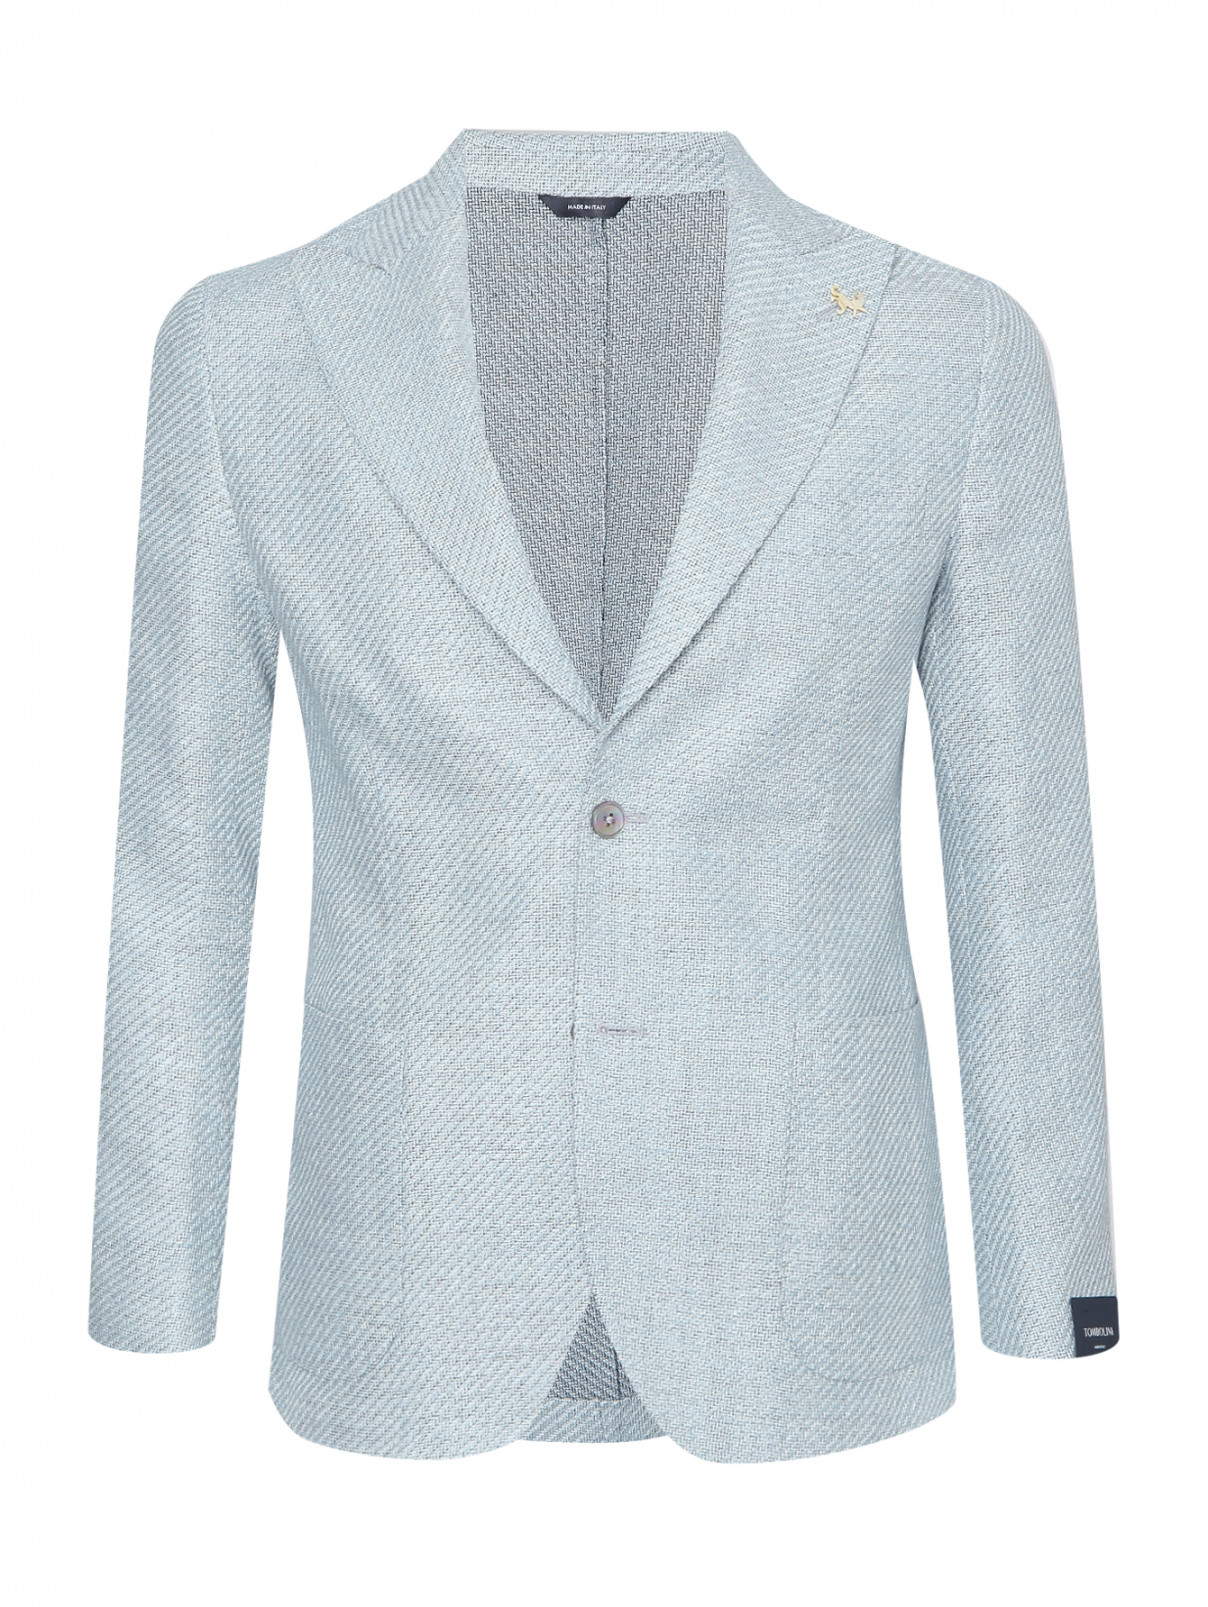 Пиджак из шелка и льна с карманами Tombolini  –  Общий вид  – Цвет:  Синий